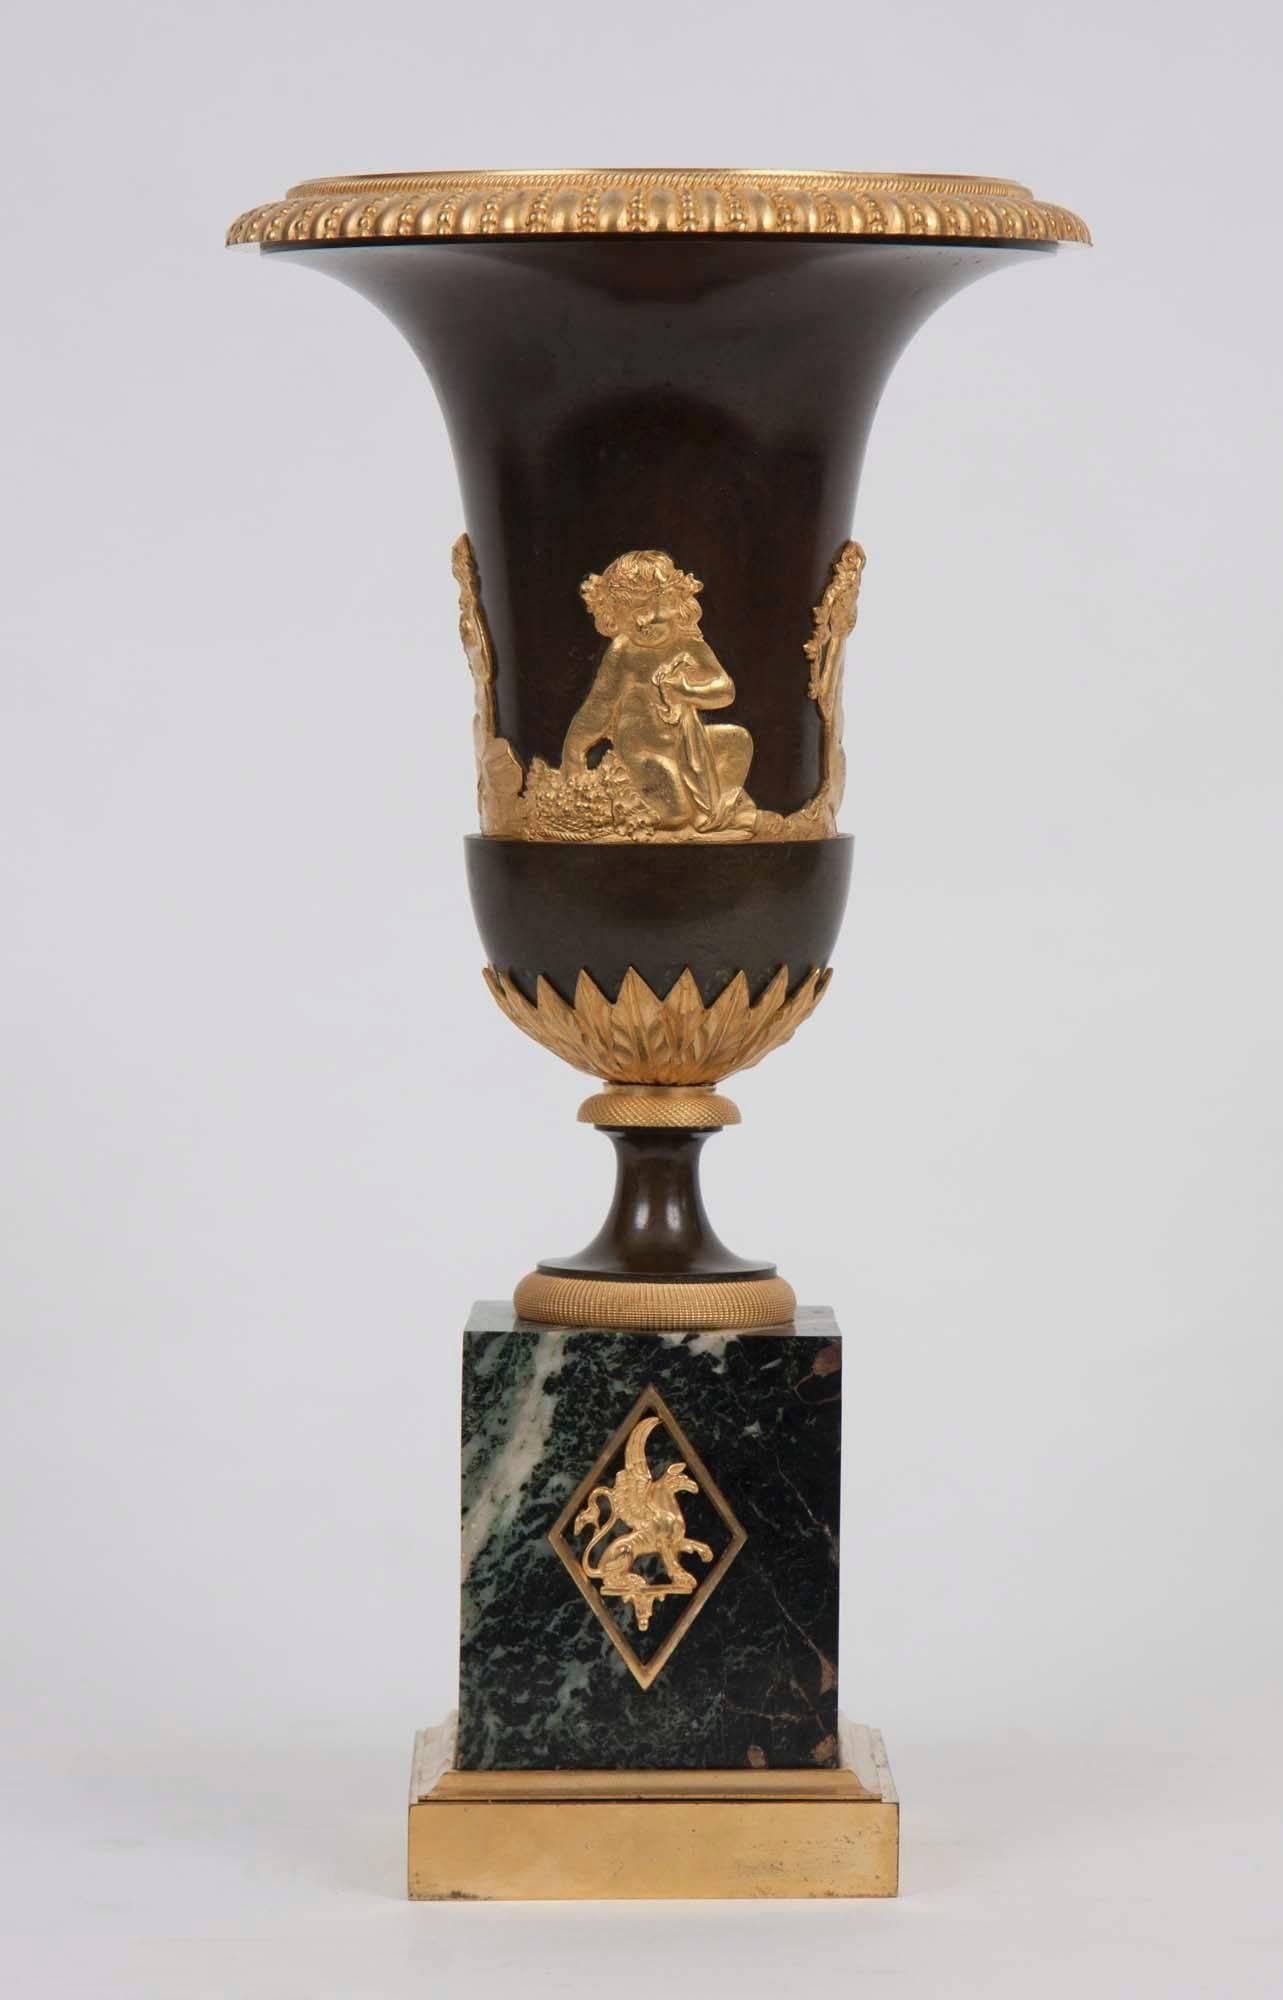 Pair of Directorie Gilt Bronze-Mounted Urns (Französisch)